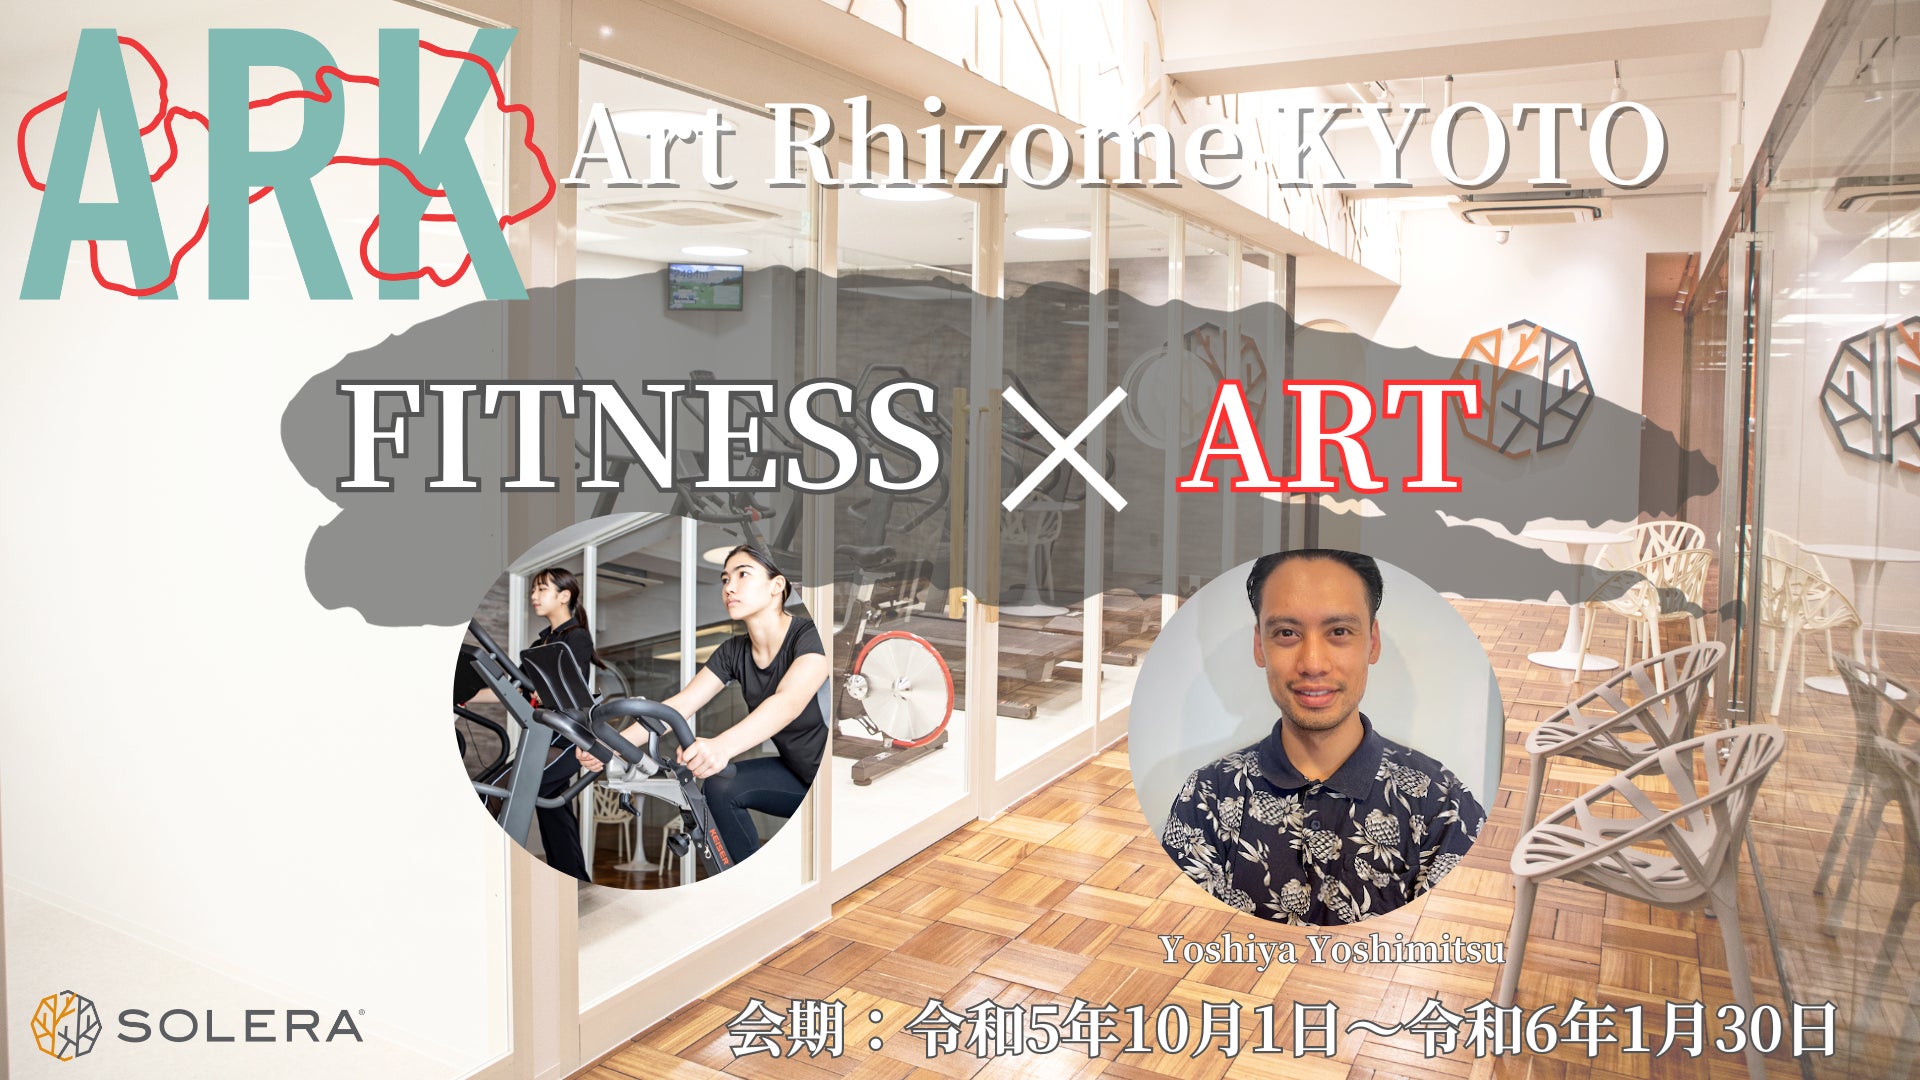 ミライ型フィットネス「高地トレーニングスタジオSOLERA」が京都初のフィットネス×アートの融合イベントを開催！